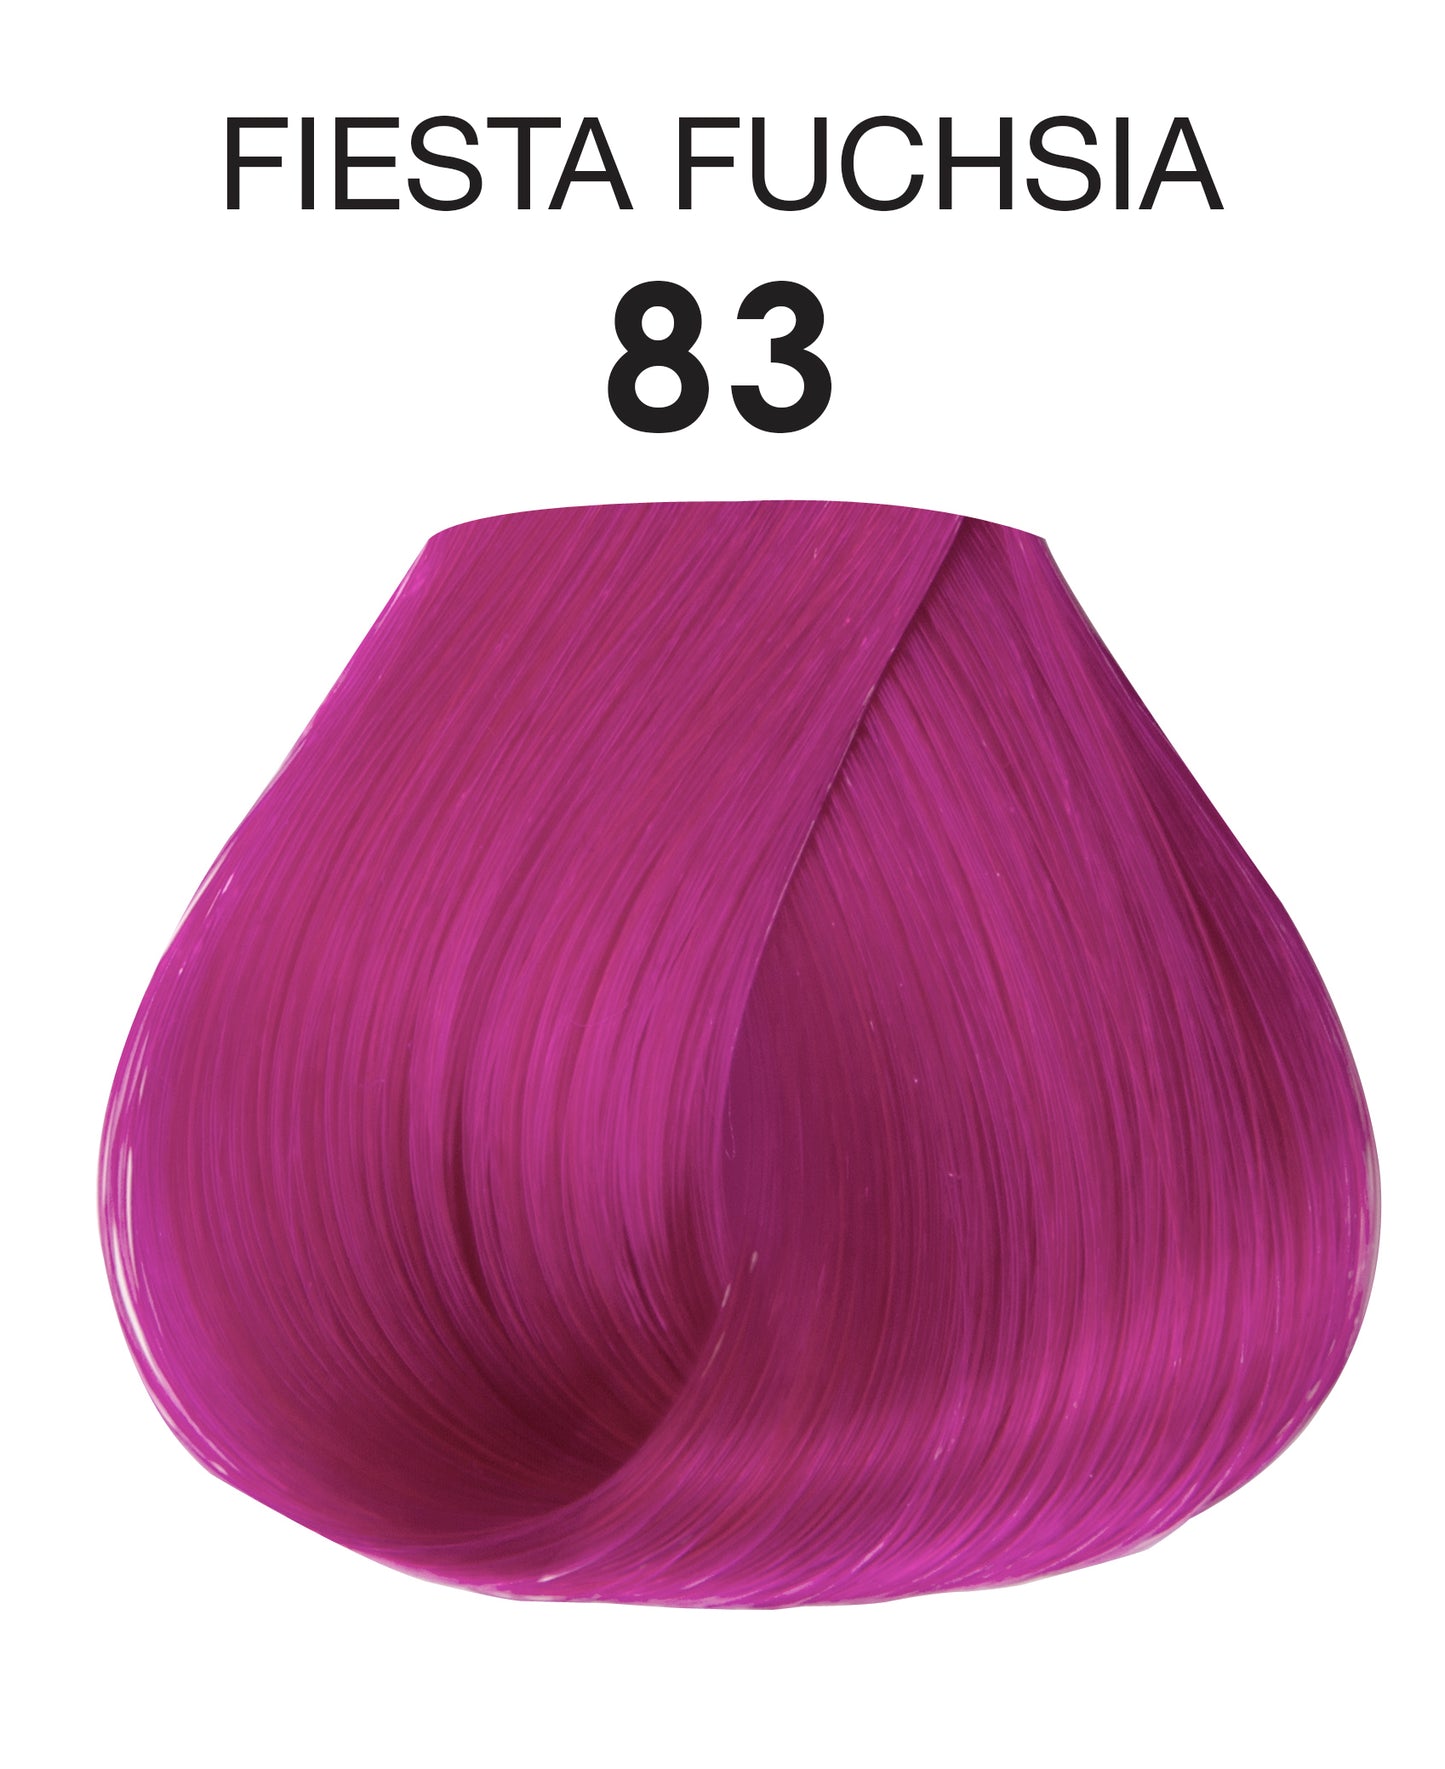 Adore #83 Fiesta Fuchisia